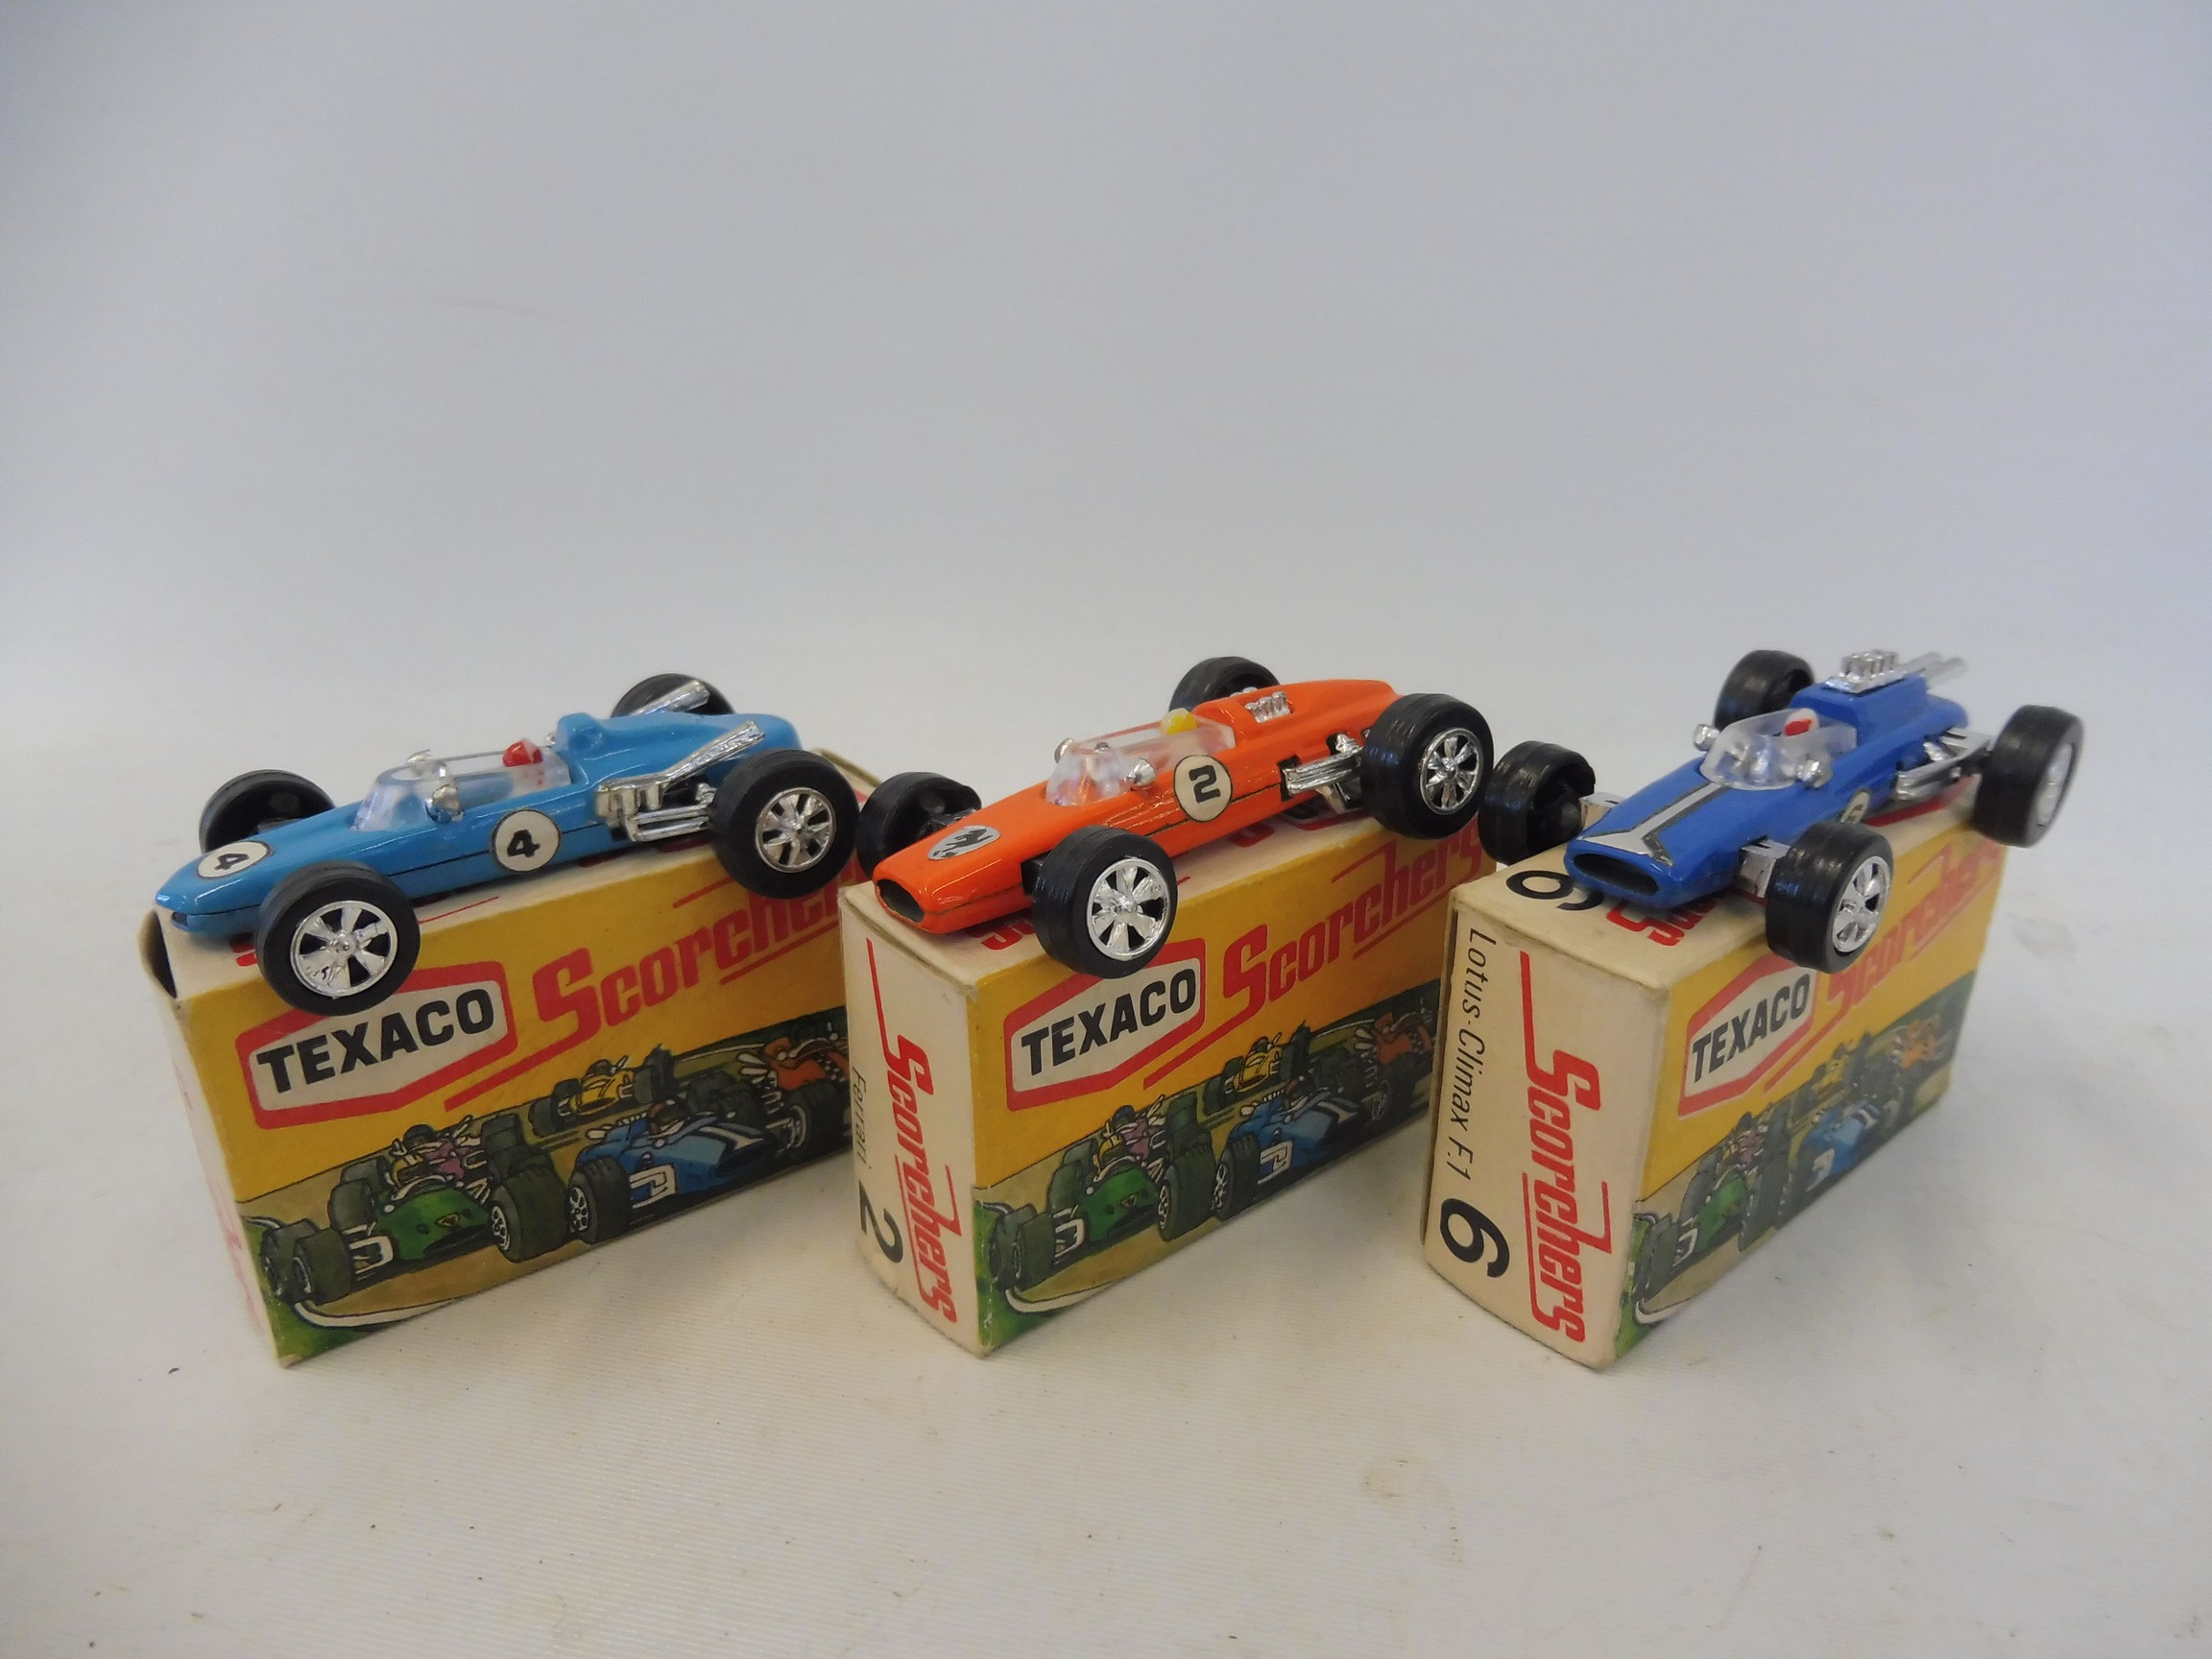 Three Texaco Scorchers in excellent condition, no.6 Lotus Climax, no.2 Ferrari and a no.4 Eagle.